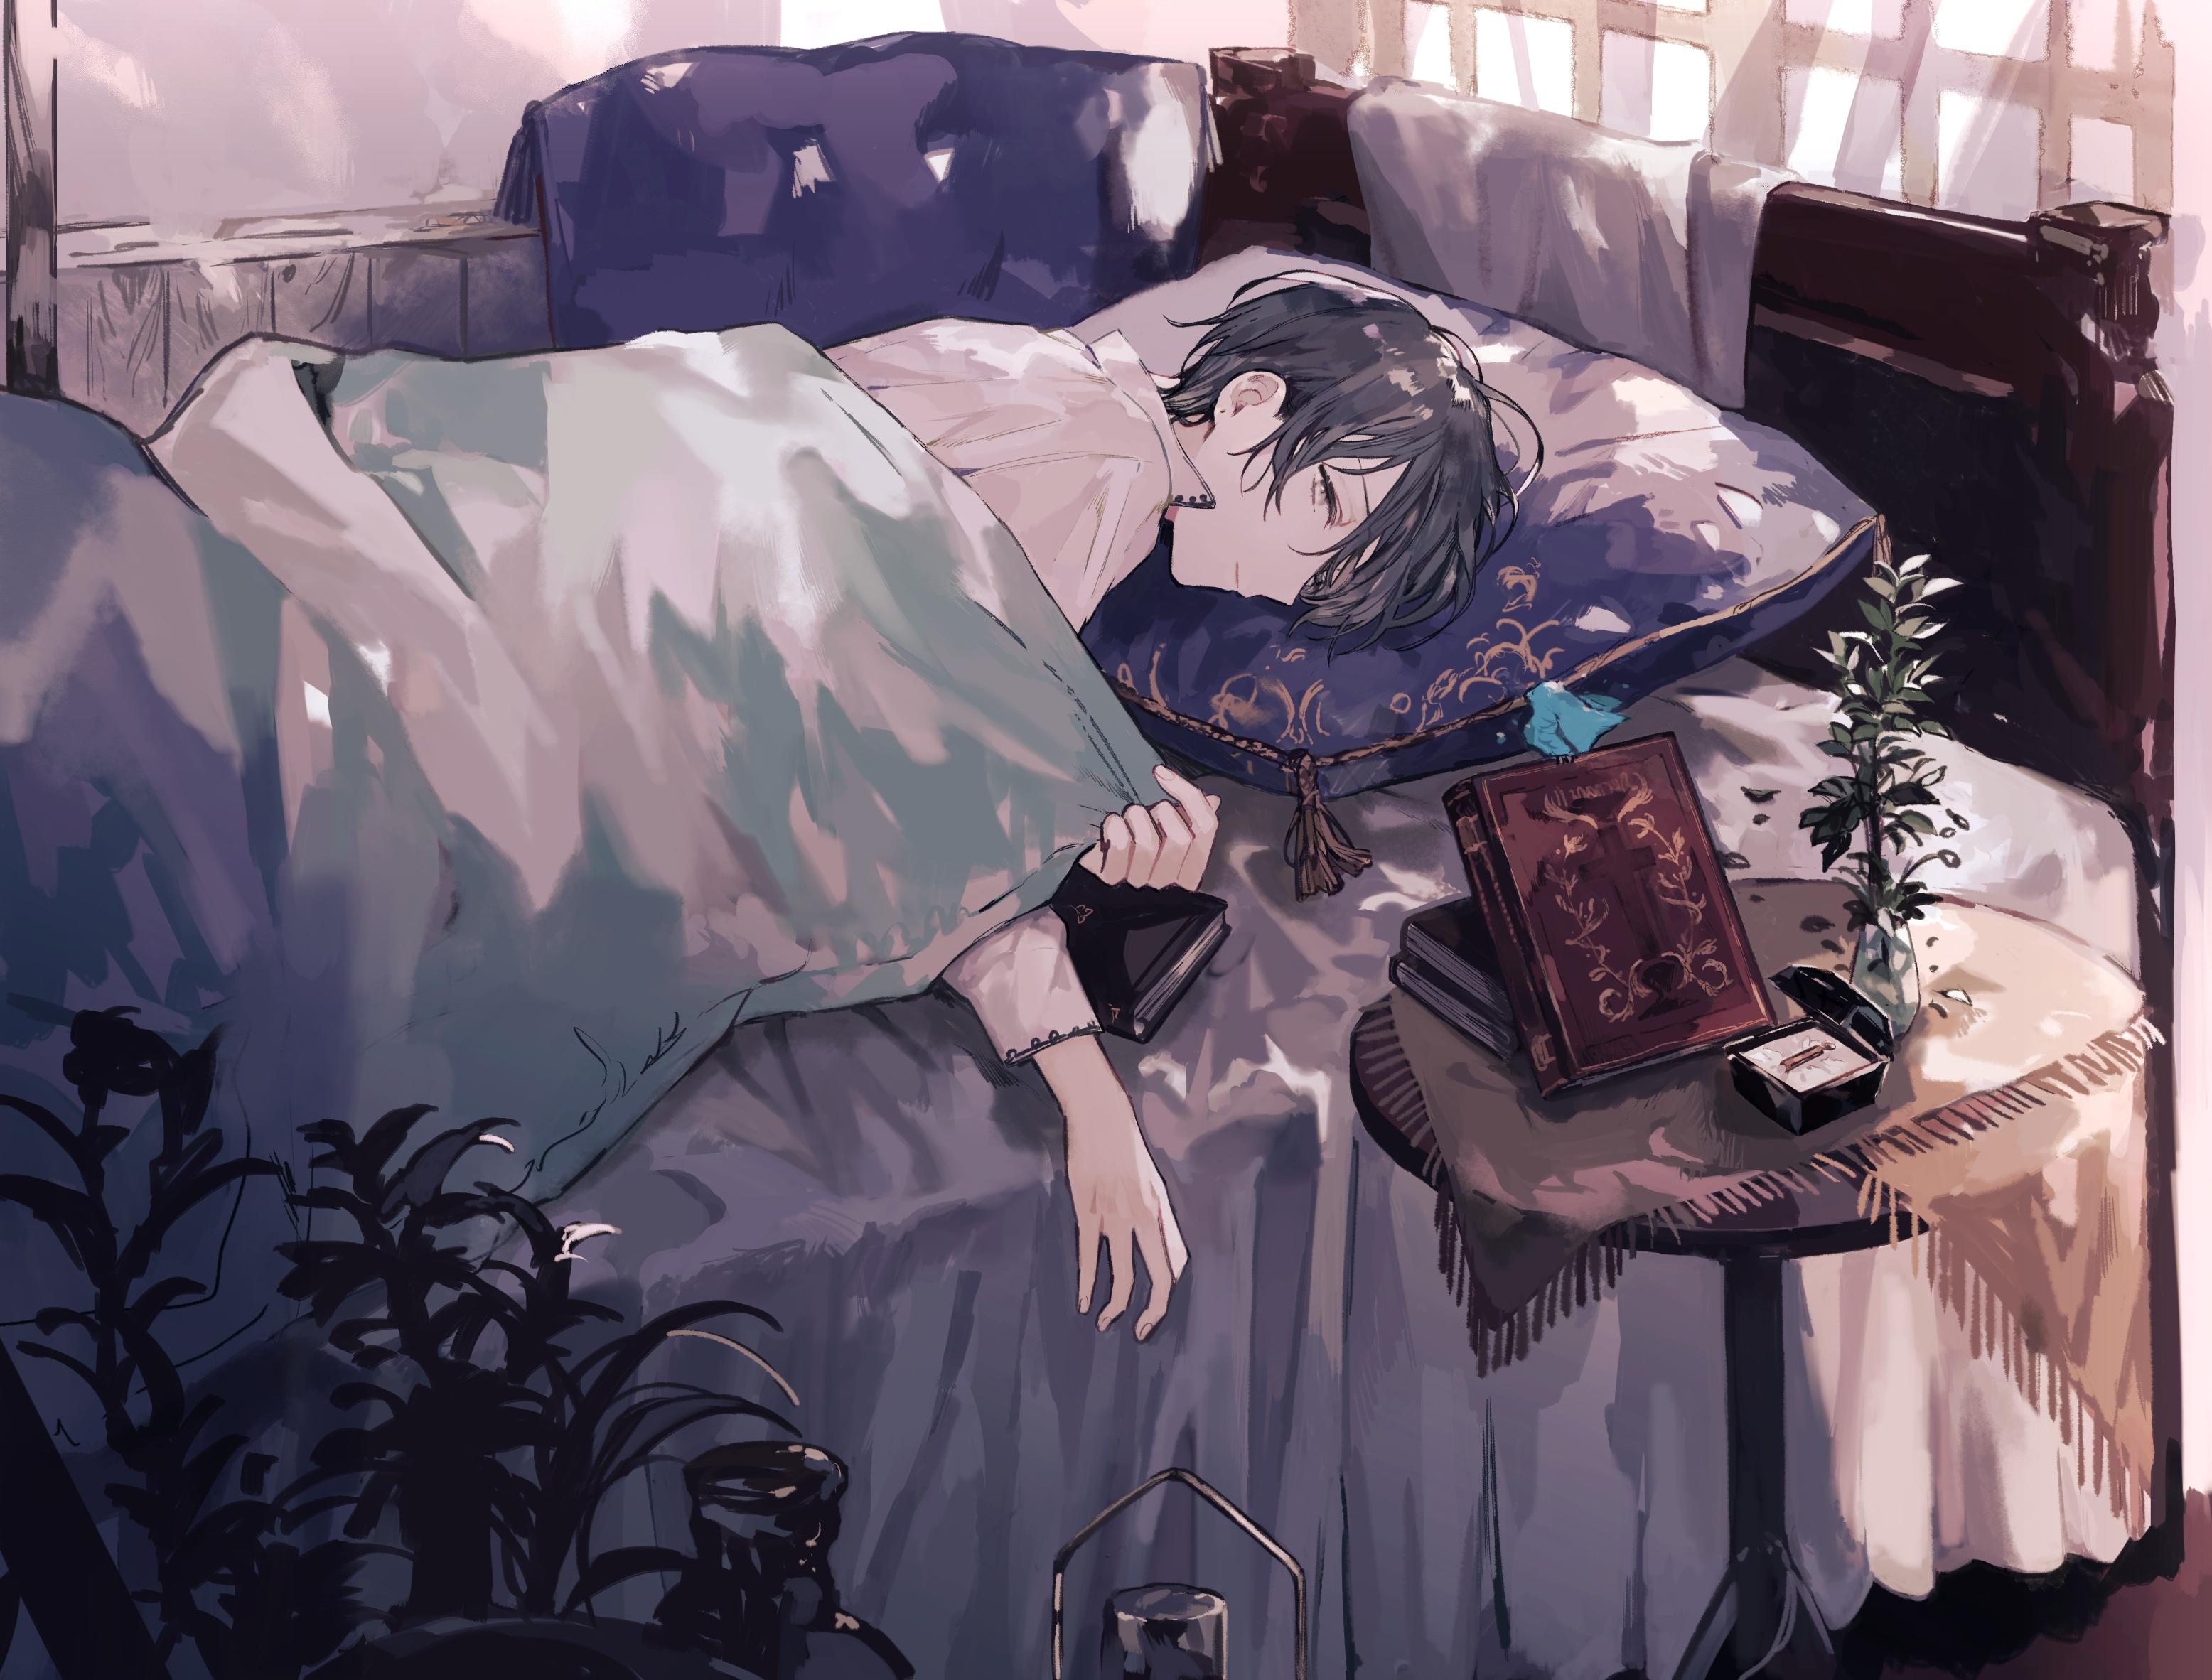 Sleepy Anime Wallpapers - Top Free Sleepy Anime Backgrounds ...